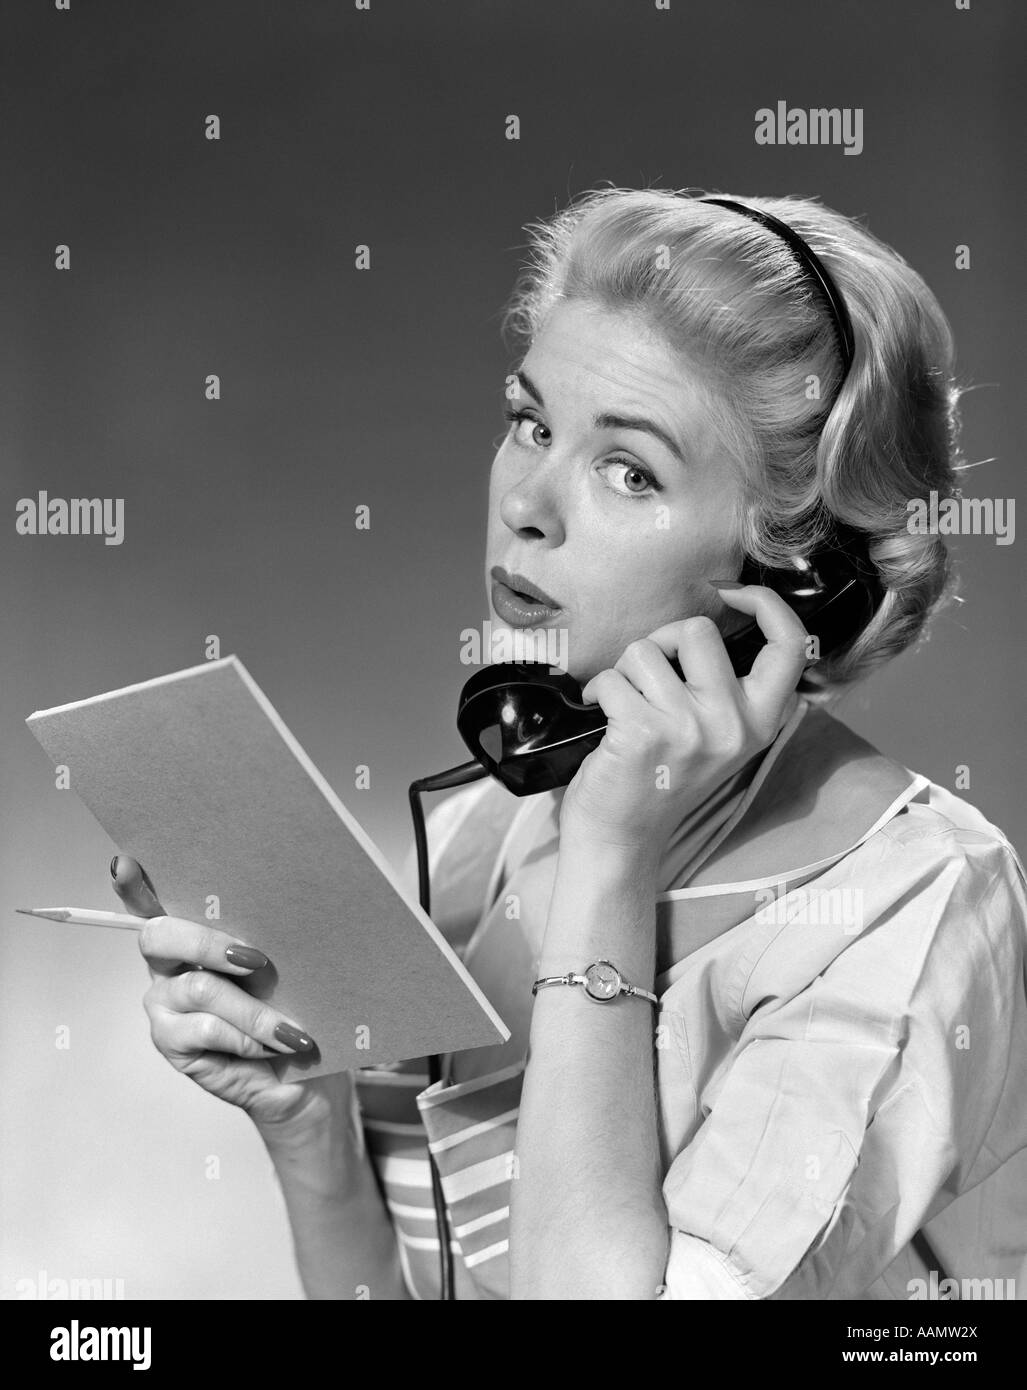 Années 1950 Années 1960 BLONDE WOMAN HOLDING TÉLÉPHONE CRAYON & TABLET LOOKING AT CAMERA Banque D'Images